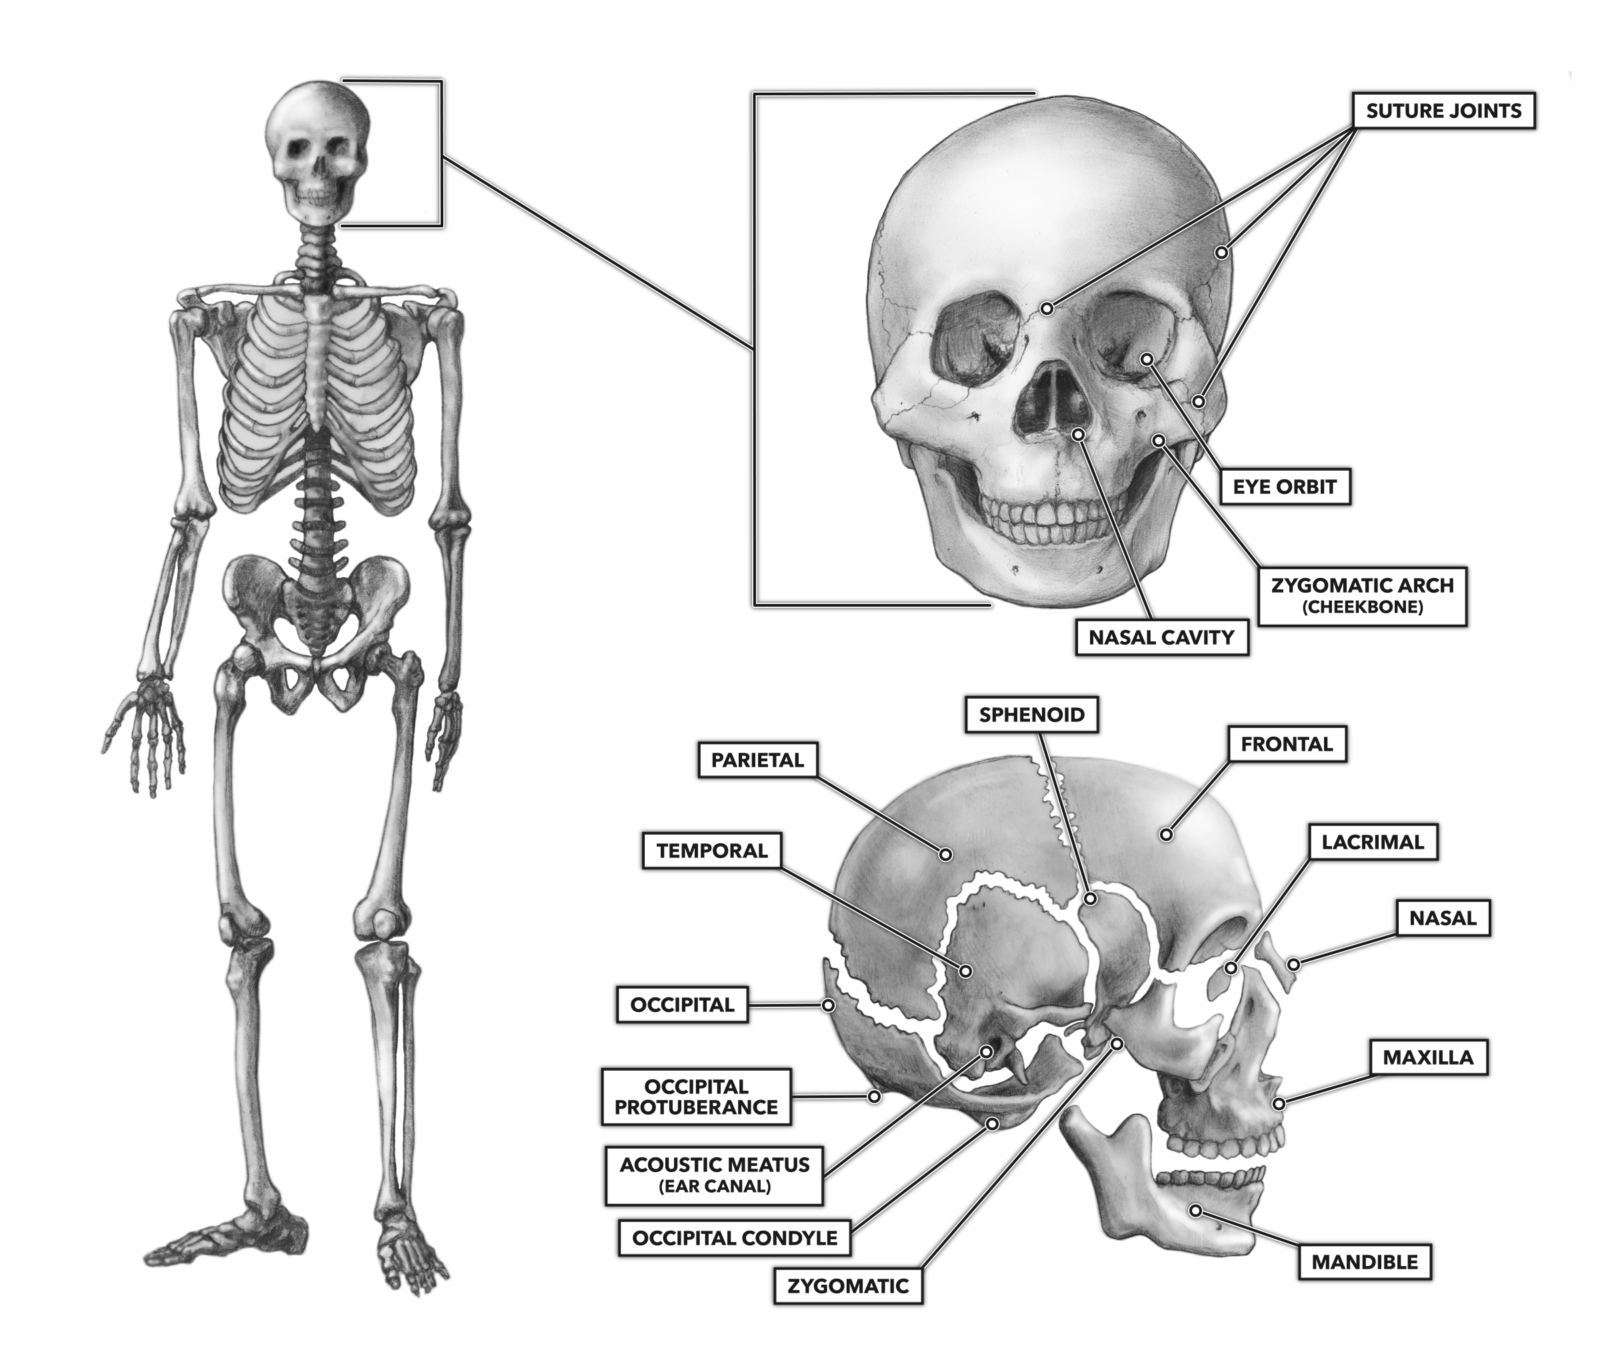 skull and bones members 2015